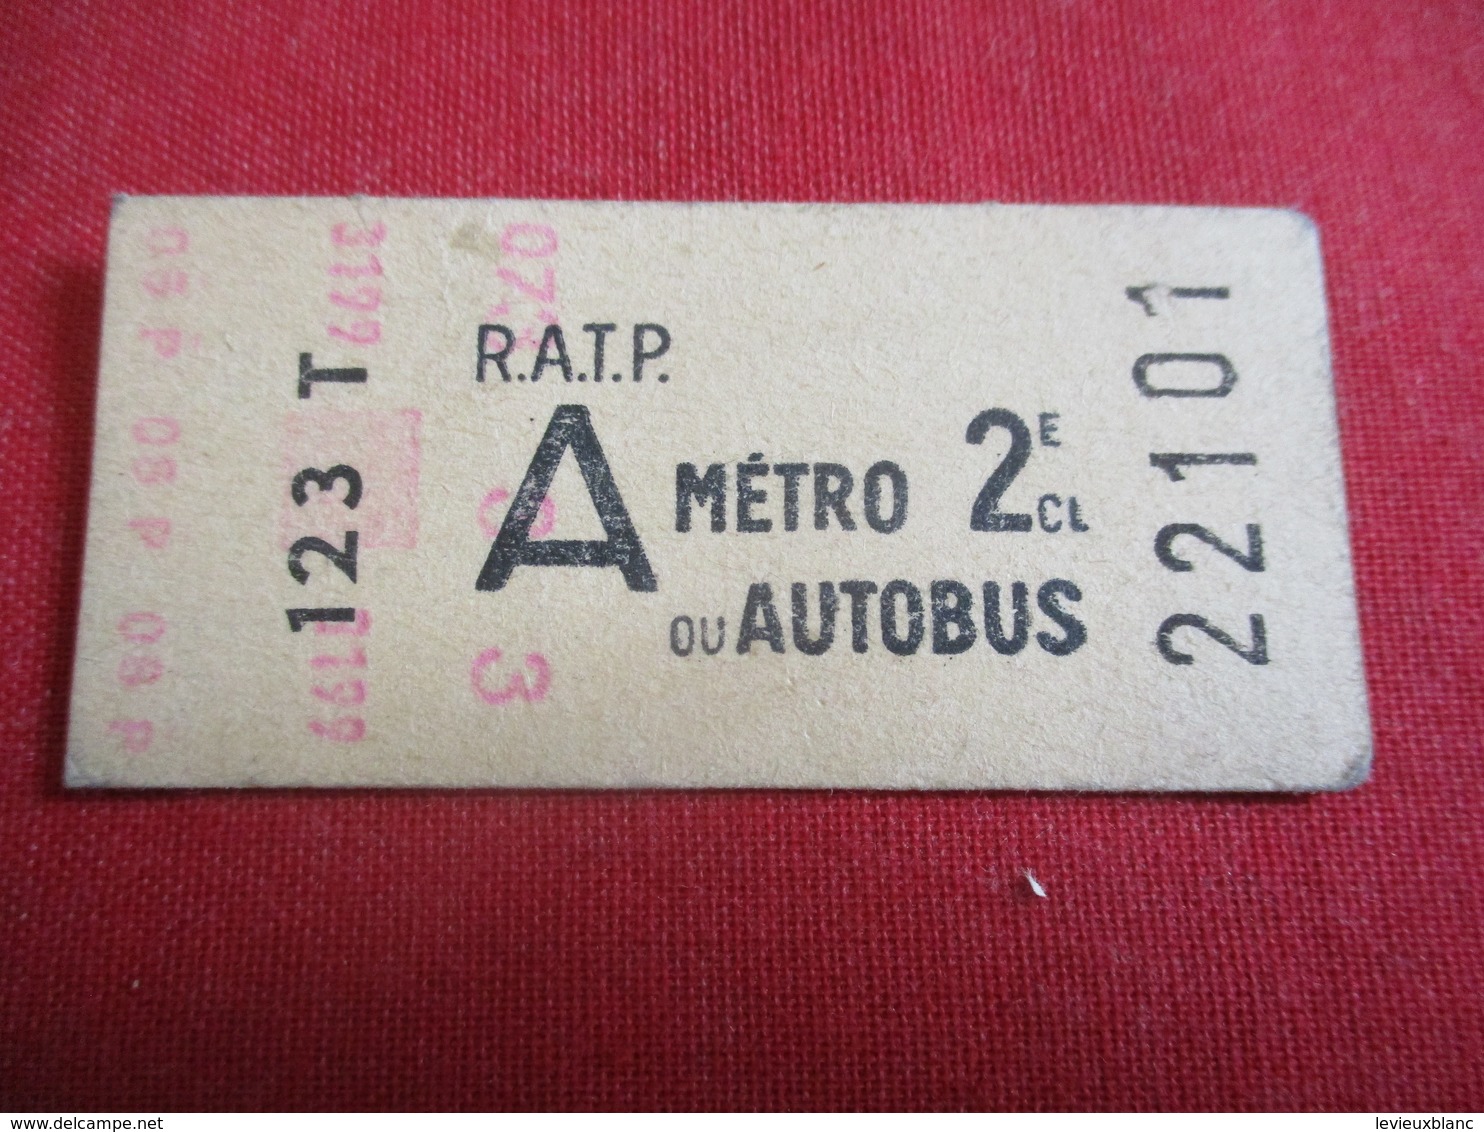 RATP / Métro Ou Autobus/ A /  2 éme Classe/ 123 T / Vers 1950-1970  TCK34 - Europe